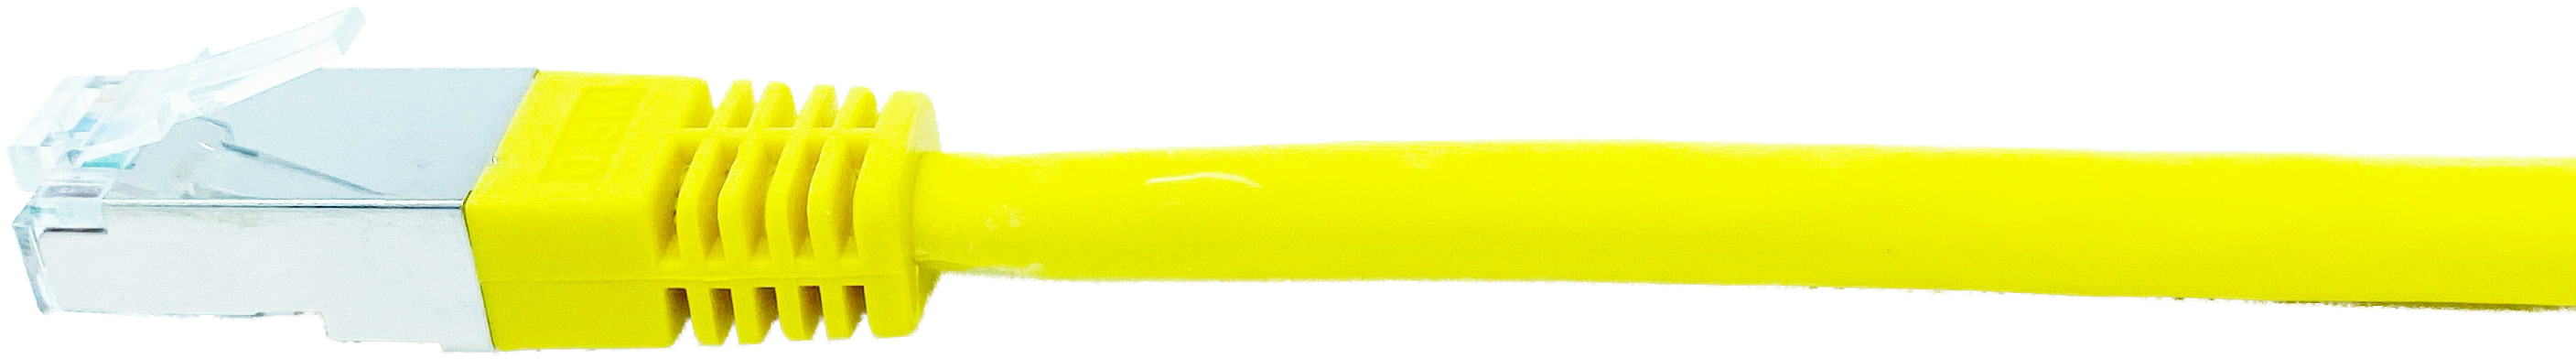 Kupferpatchkabel Cat.6 250MHz 1,5m gelb